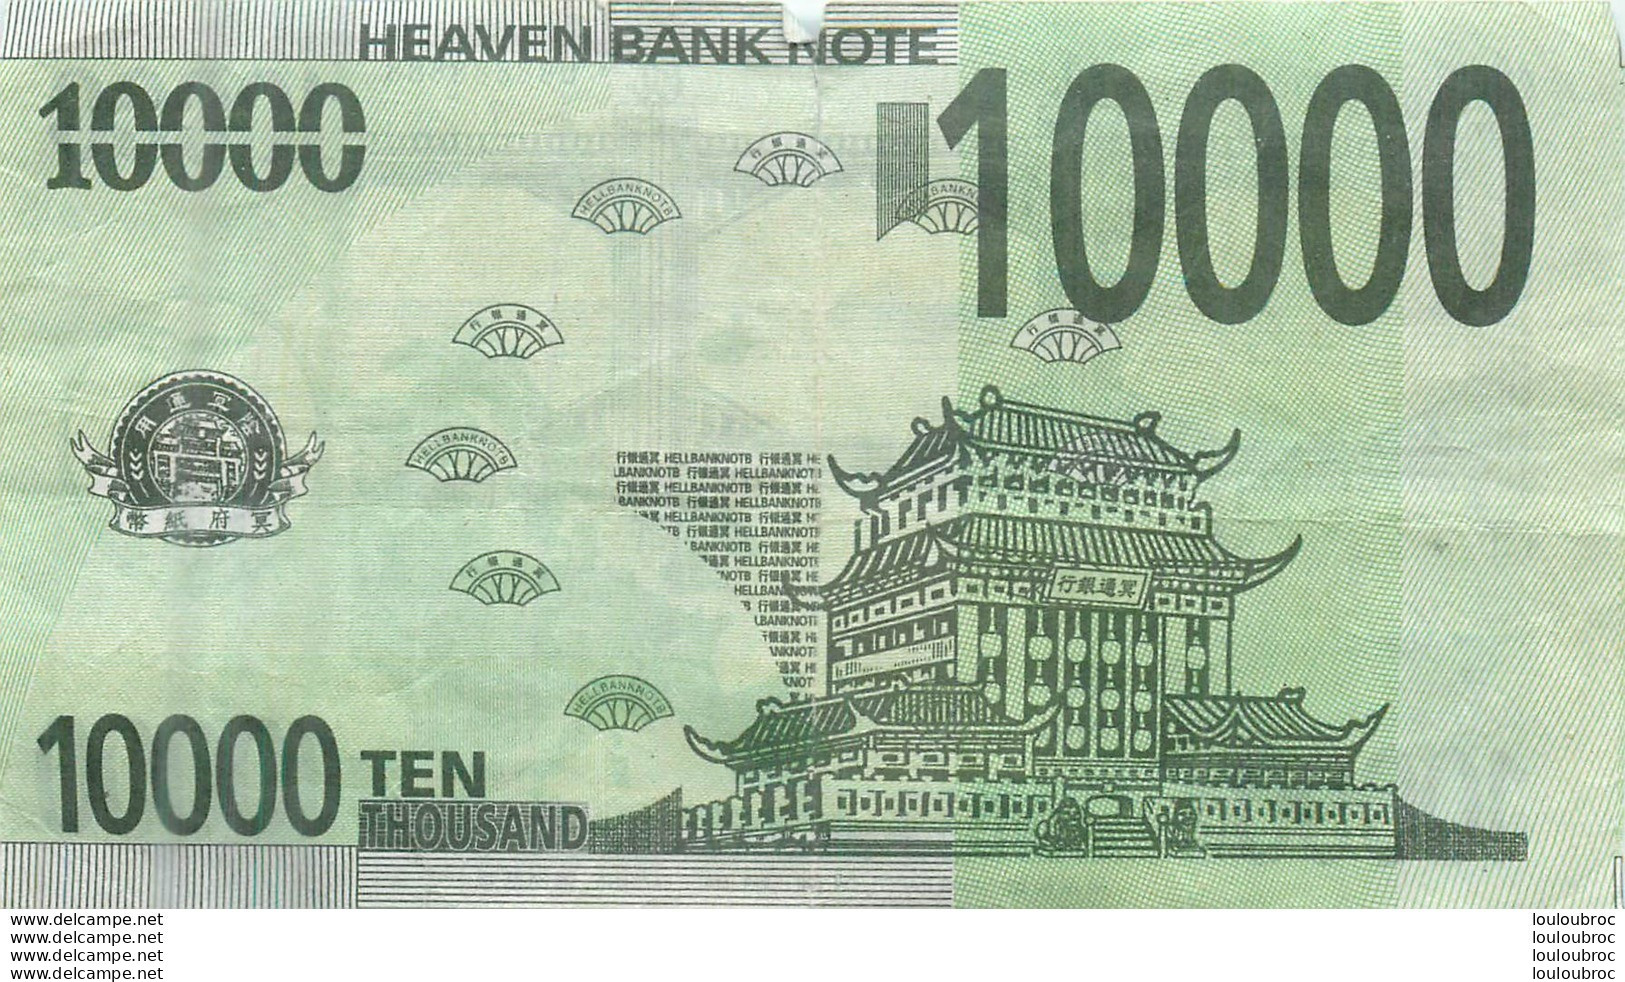 BILLET  10000 YUK WONG  HEAVEN BANK NOTE - Cina